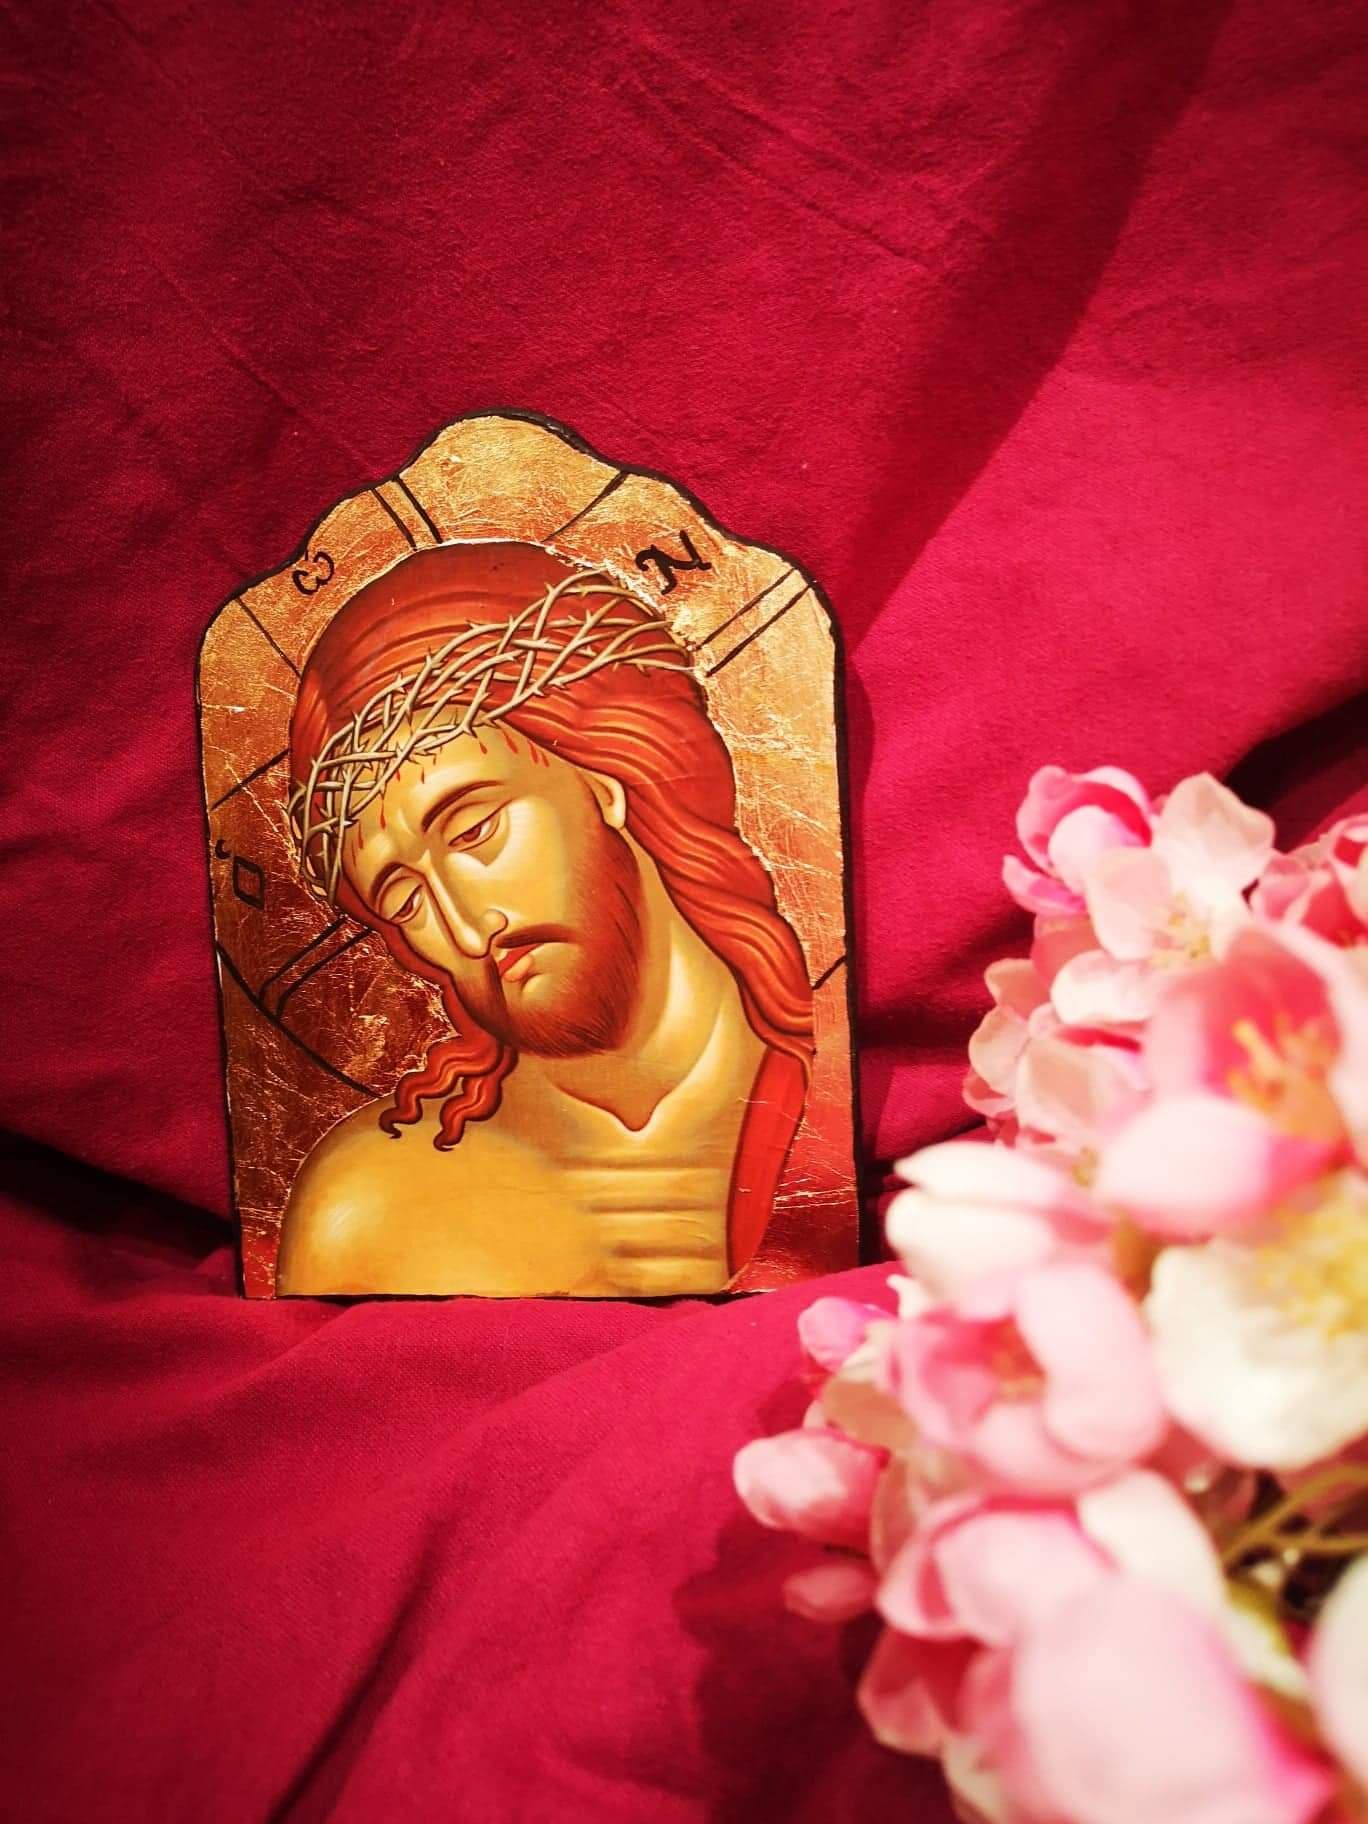 Χειροποίητη (decoupage) εικόνα σε ξύλο: Ιησούς Χριστός ο Νυμφίος